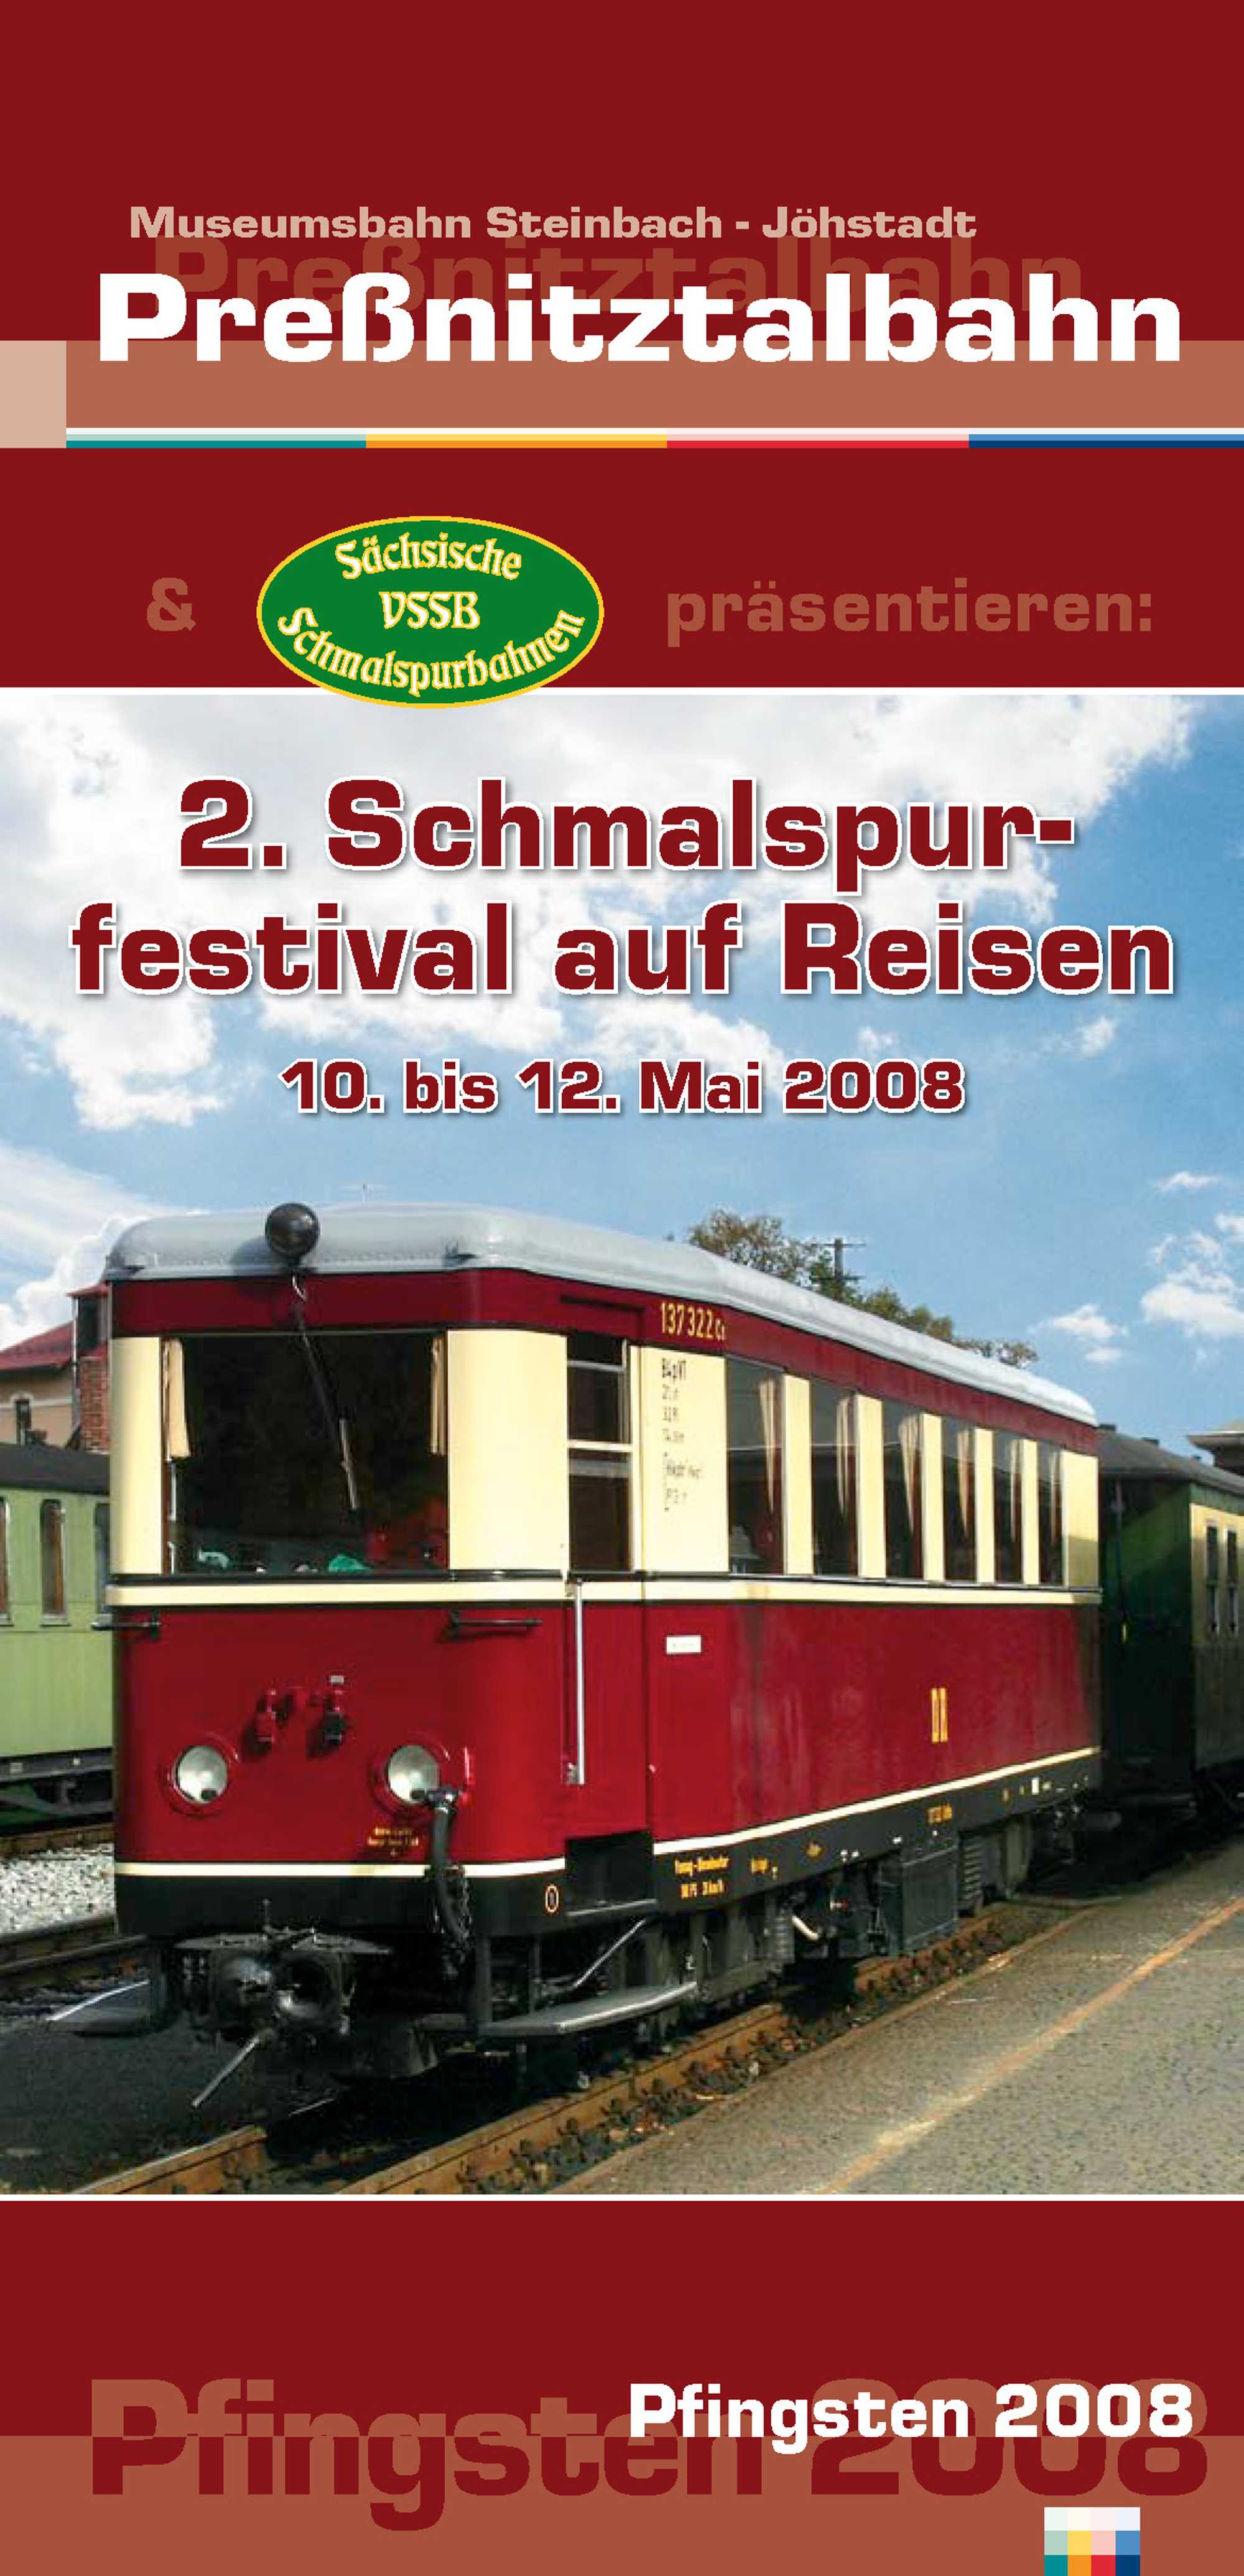 Veranstaltungsflyer zum 2. Schmalspurfestival auf Reisen und Bahnhofsfest Pfingsten 2008 (Vorderseite)